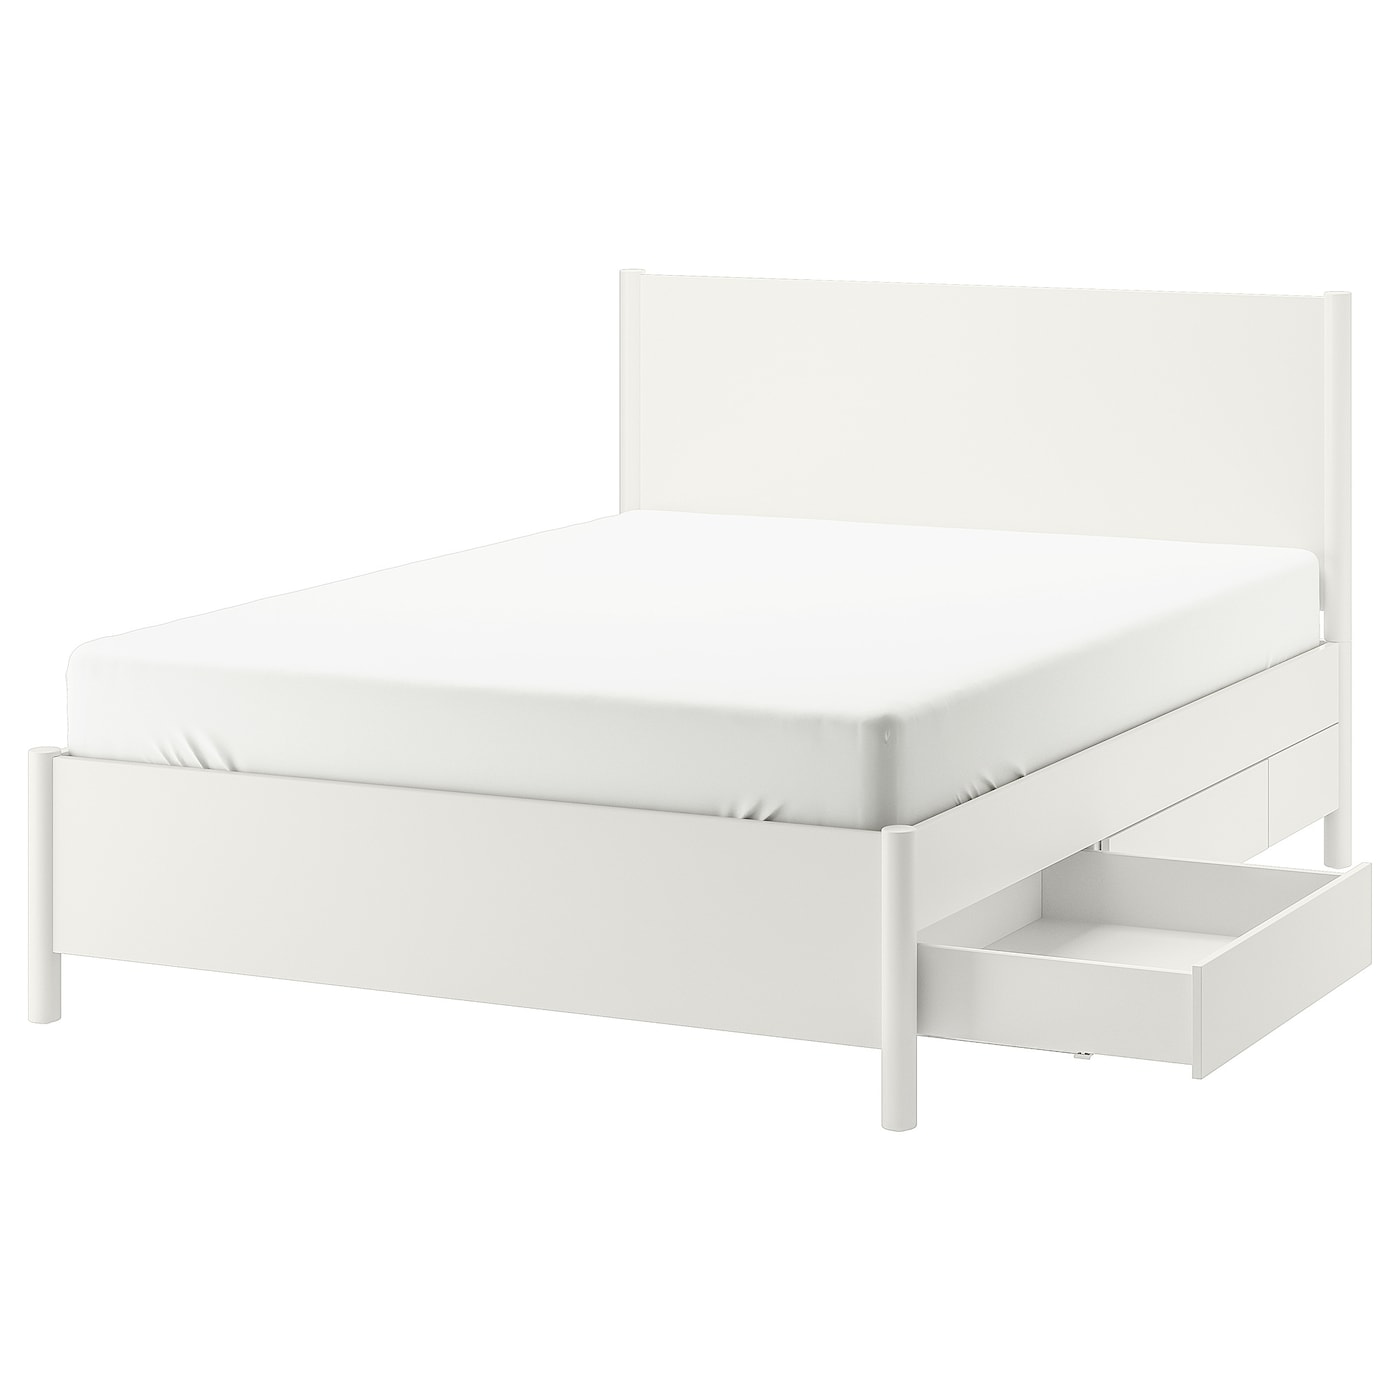 Каркас кровати - TONSTAD IKEA/ ТОНСТАД ИКЕА,  211х154 см, белый